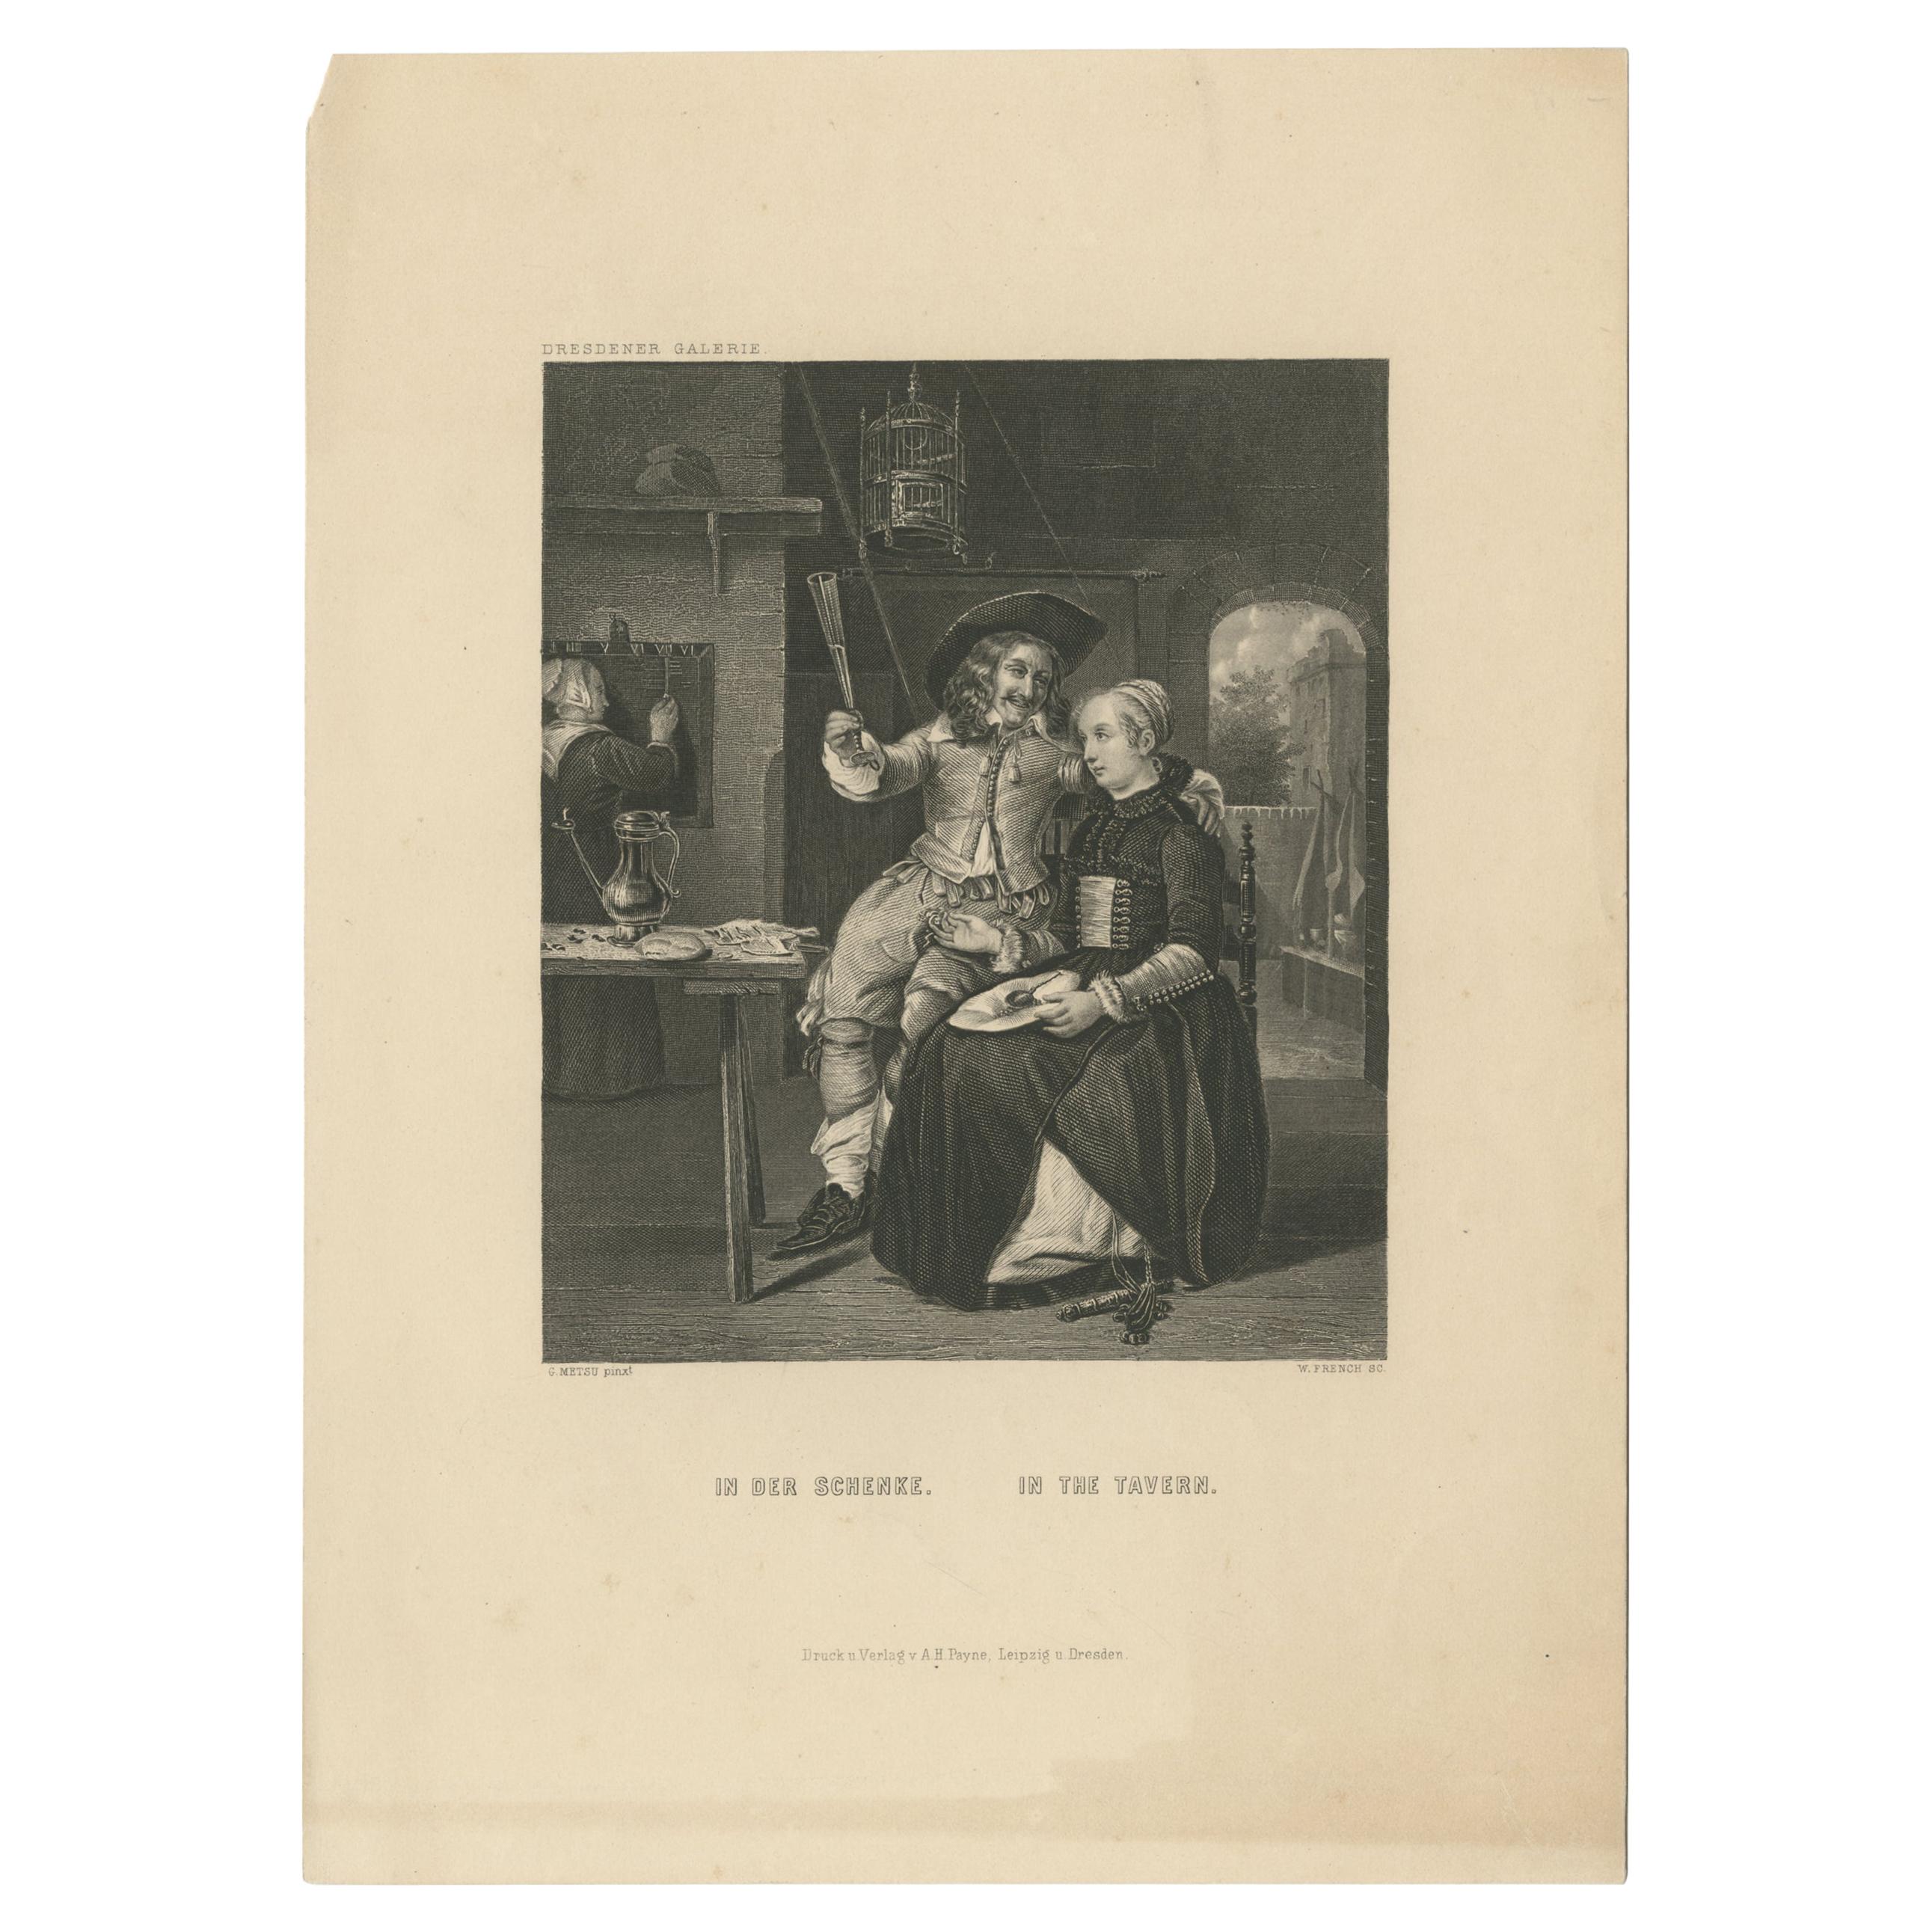 Antiker Druck einer Tavernszene von Payne, um 1850